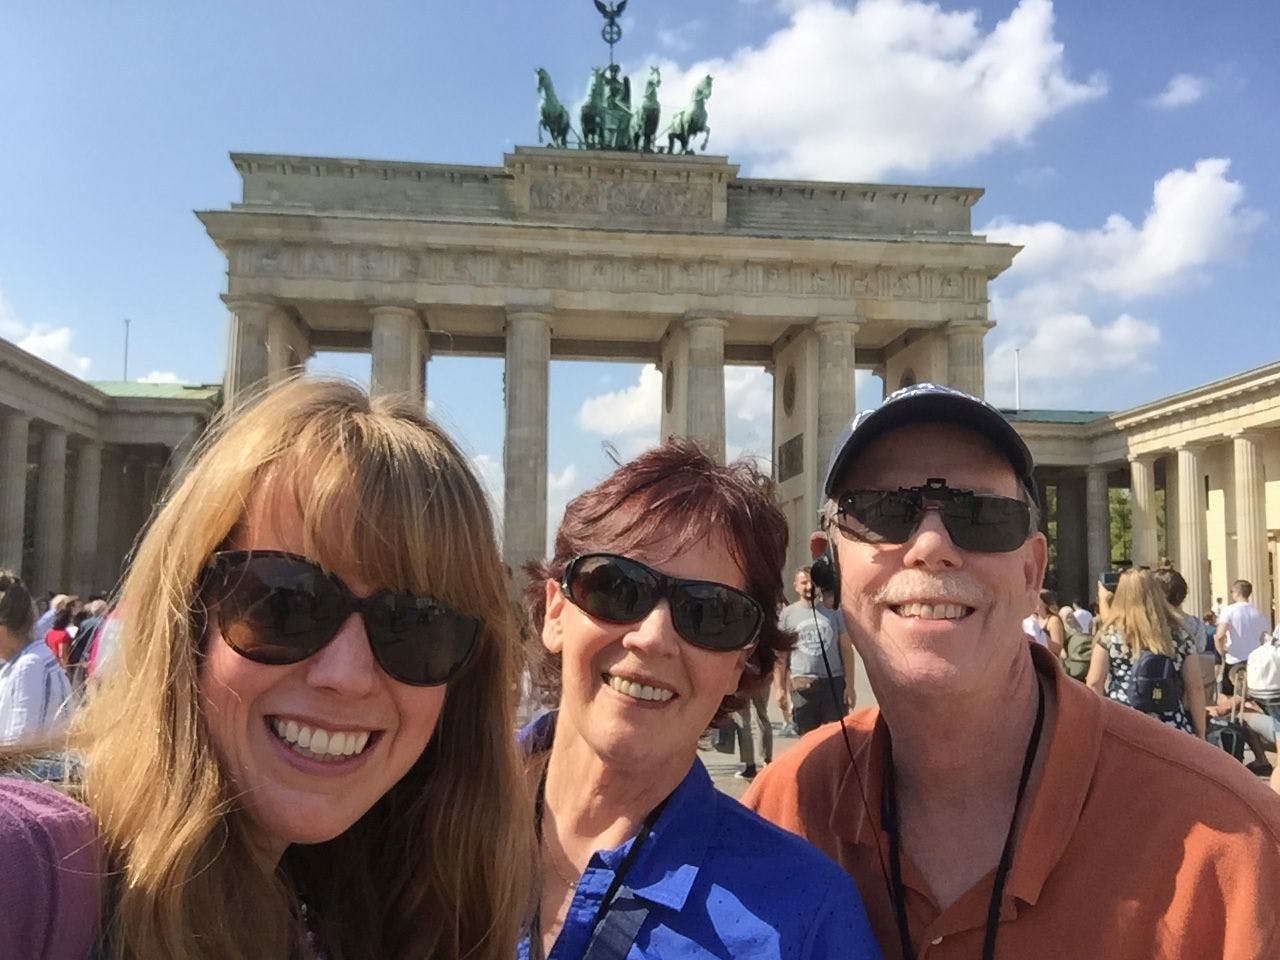 Berlim Oriental: Excursão privada de 3 horas pela Cidade das Sombras com um historiador amigável